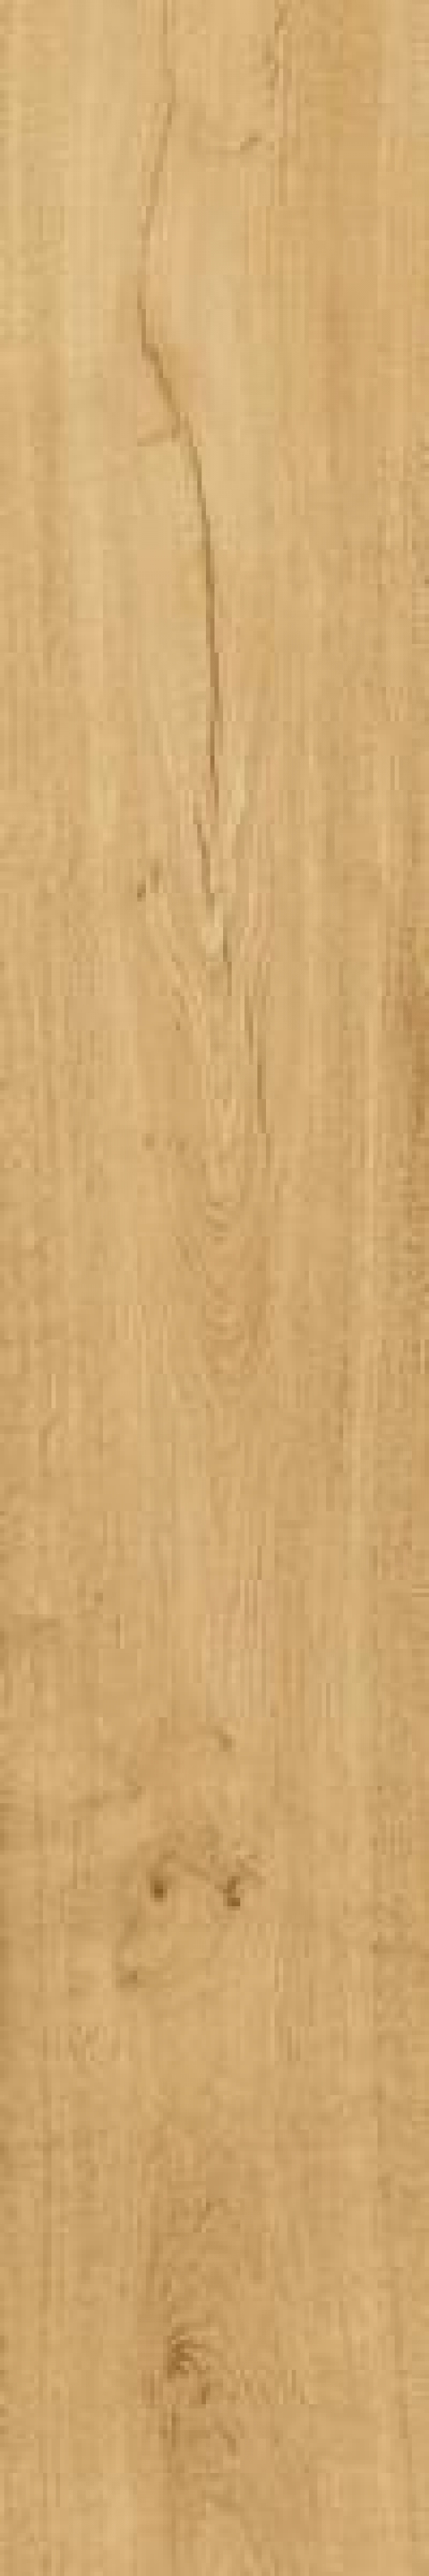 Фото плитки Heartwood Malt 20x120 (AL7E) Керамогранит, размер 20x120